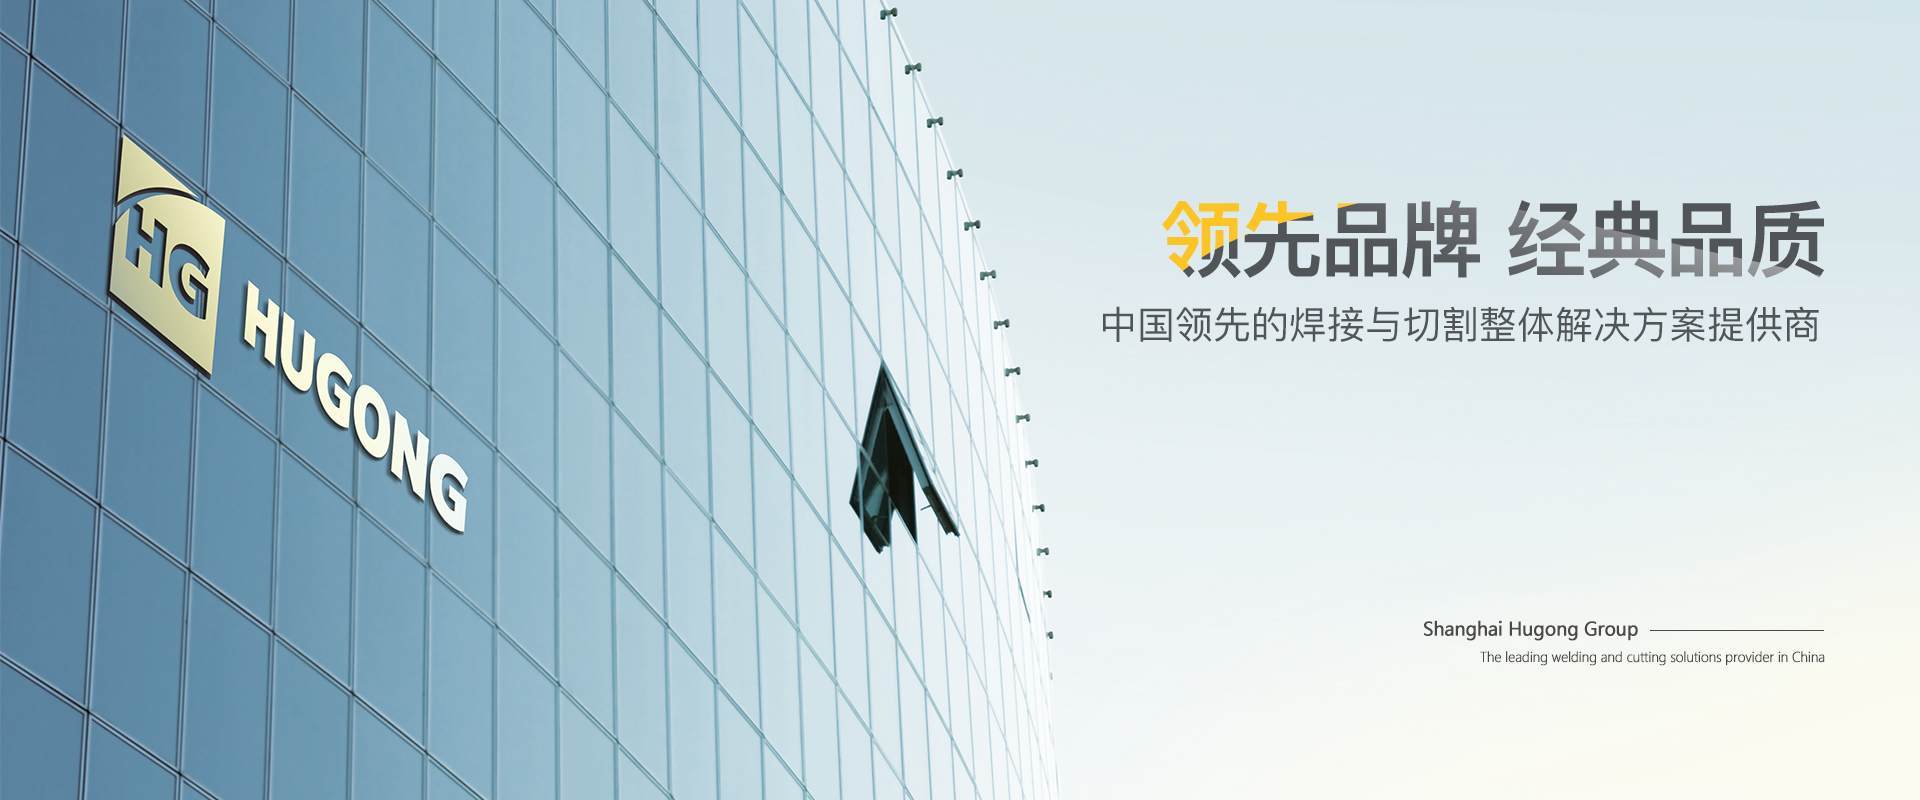 上Ｗ鹆钡锹际滓-中国领先的焊接与切割整体解决计划提供商